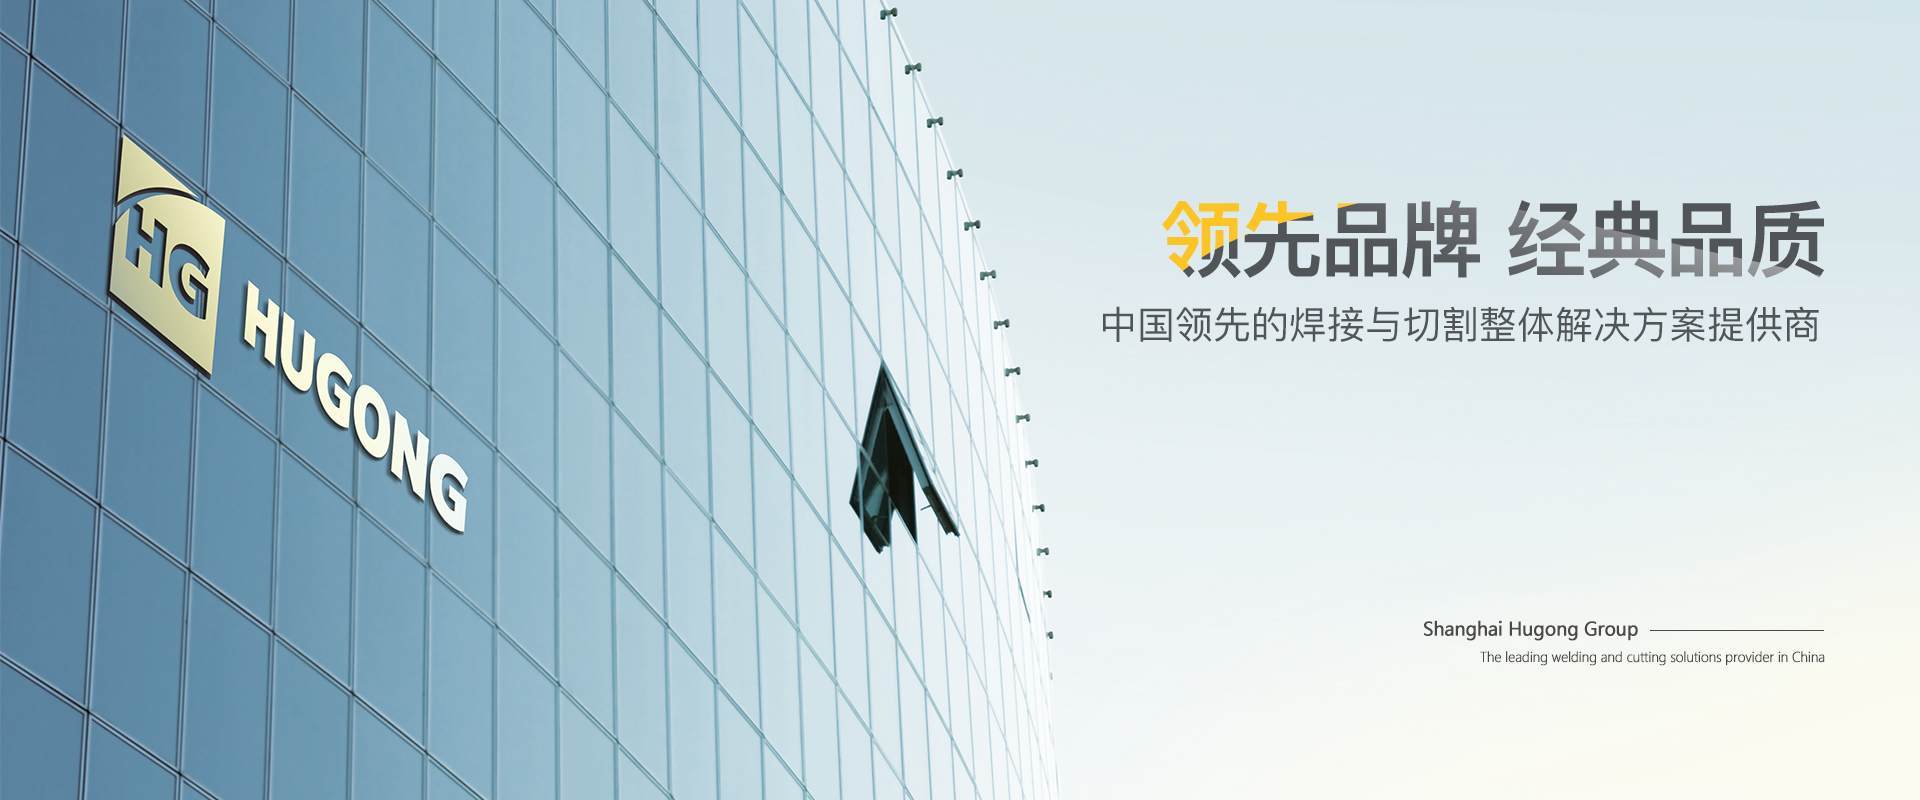 上Ｗ鹆钡锹际滓-中国领先的焊接与切割整体解决计划提供商